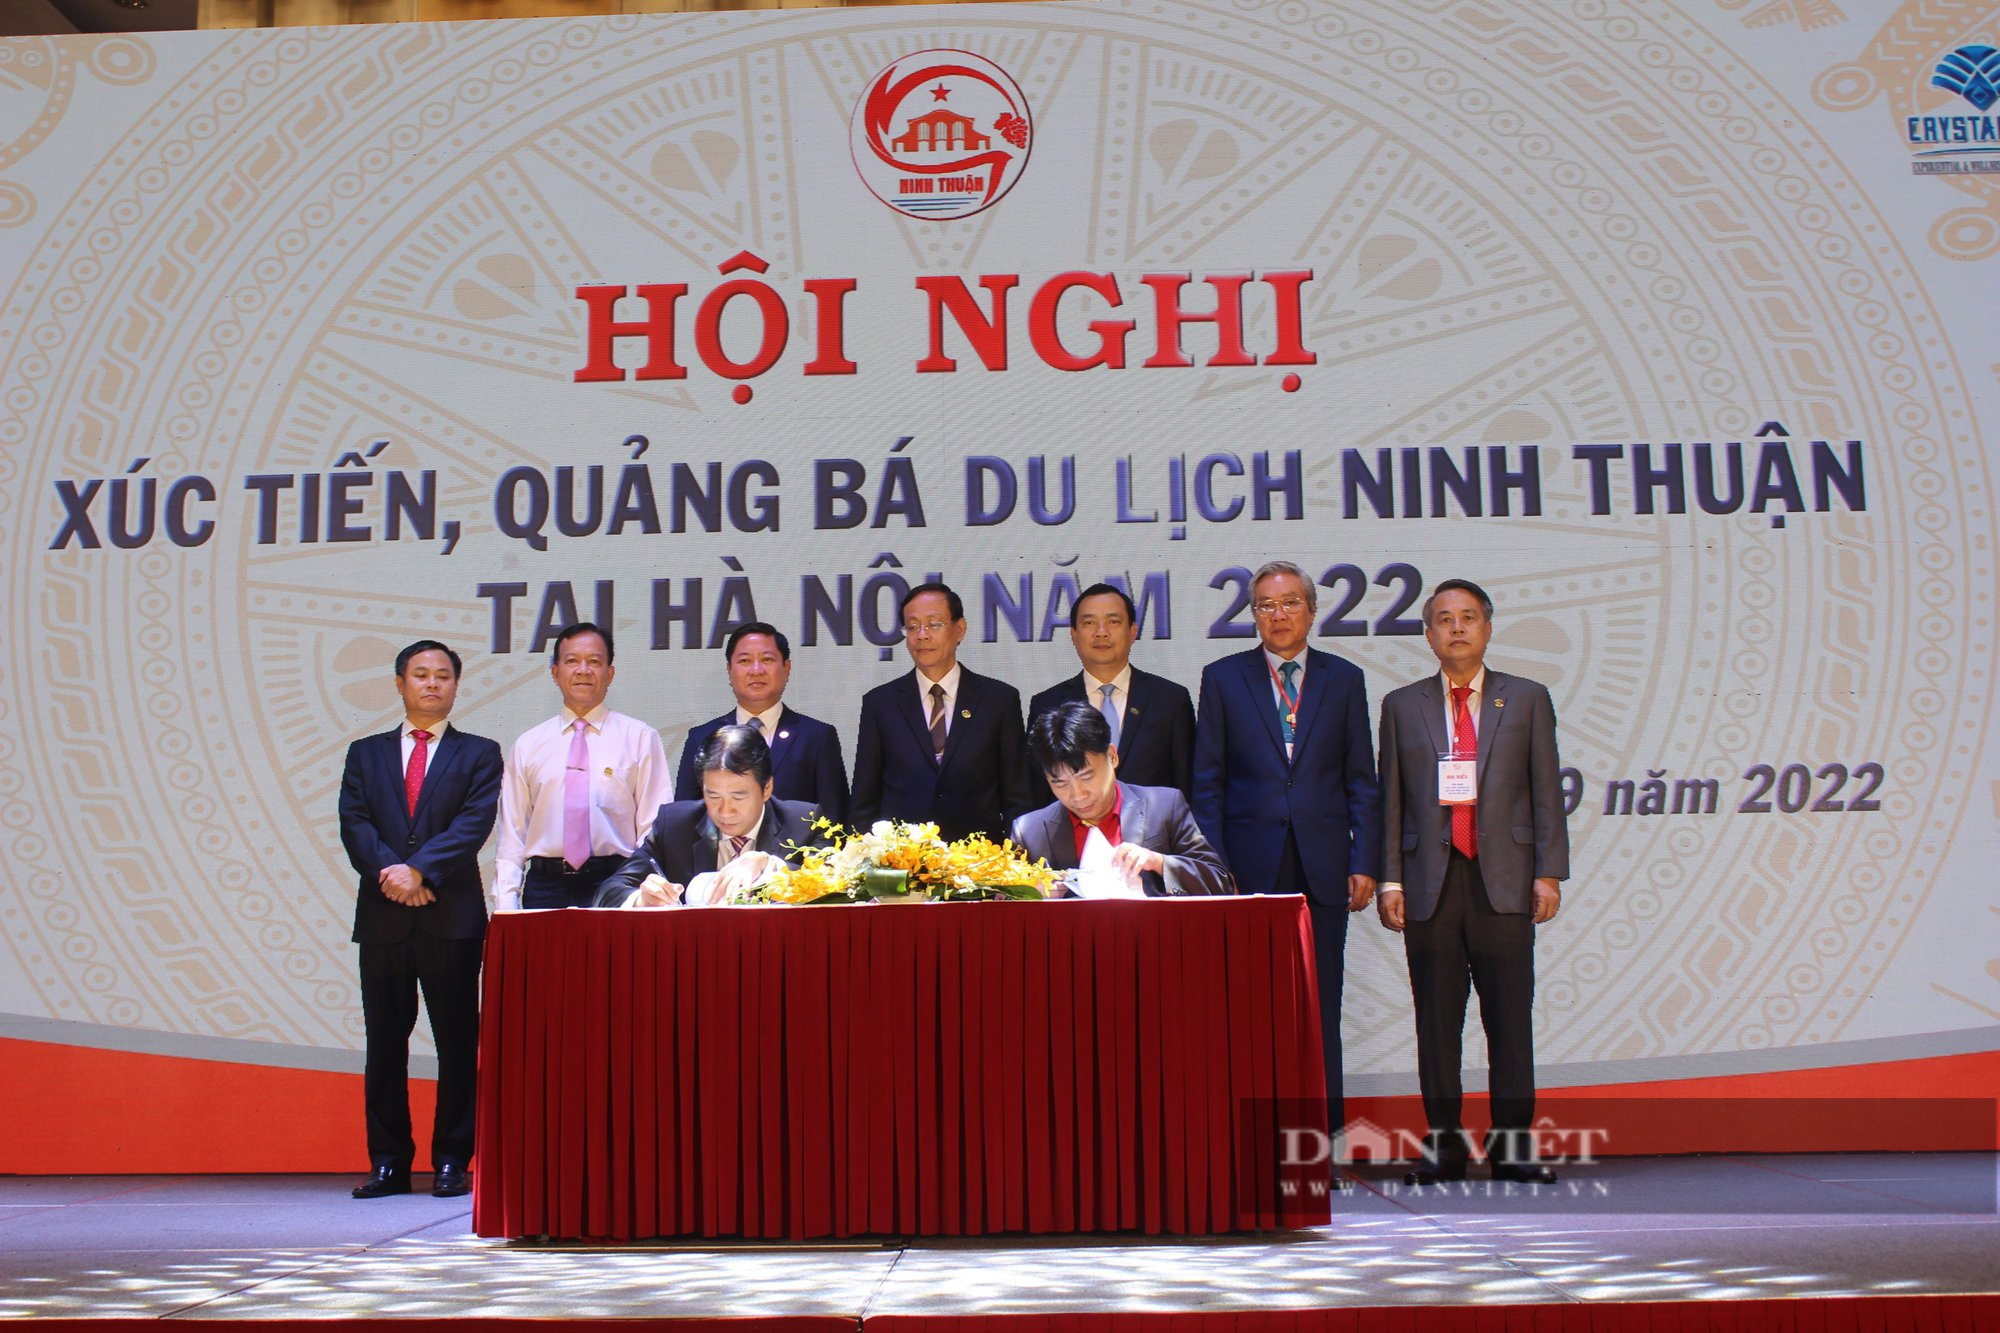 Ninh Thuận – Hà Nội “bắt tay” nhau cùng phát triển du lịch bền vững - Ảnh 6.